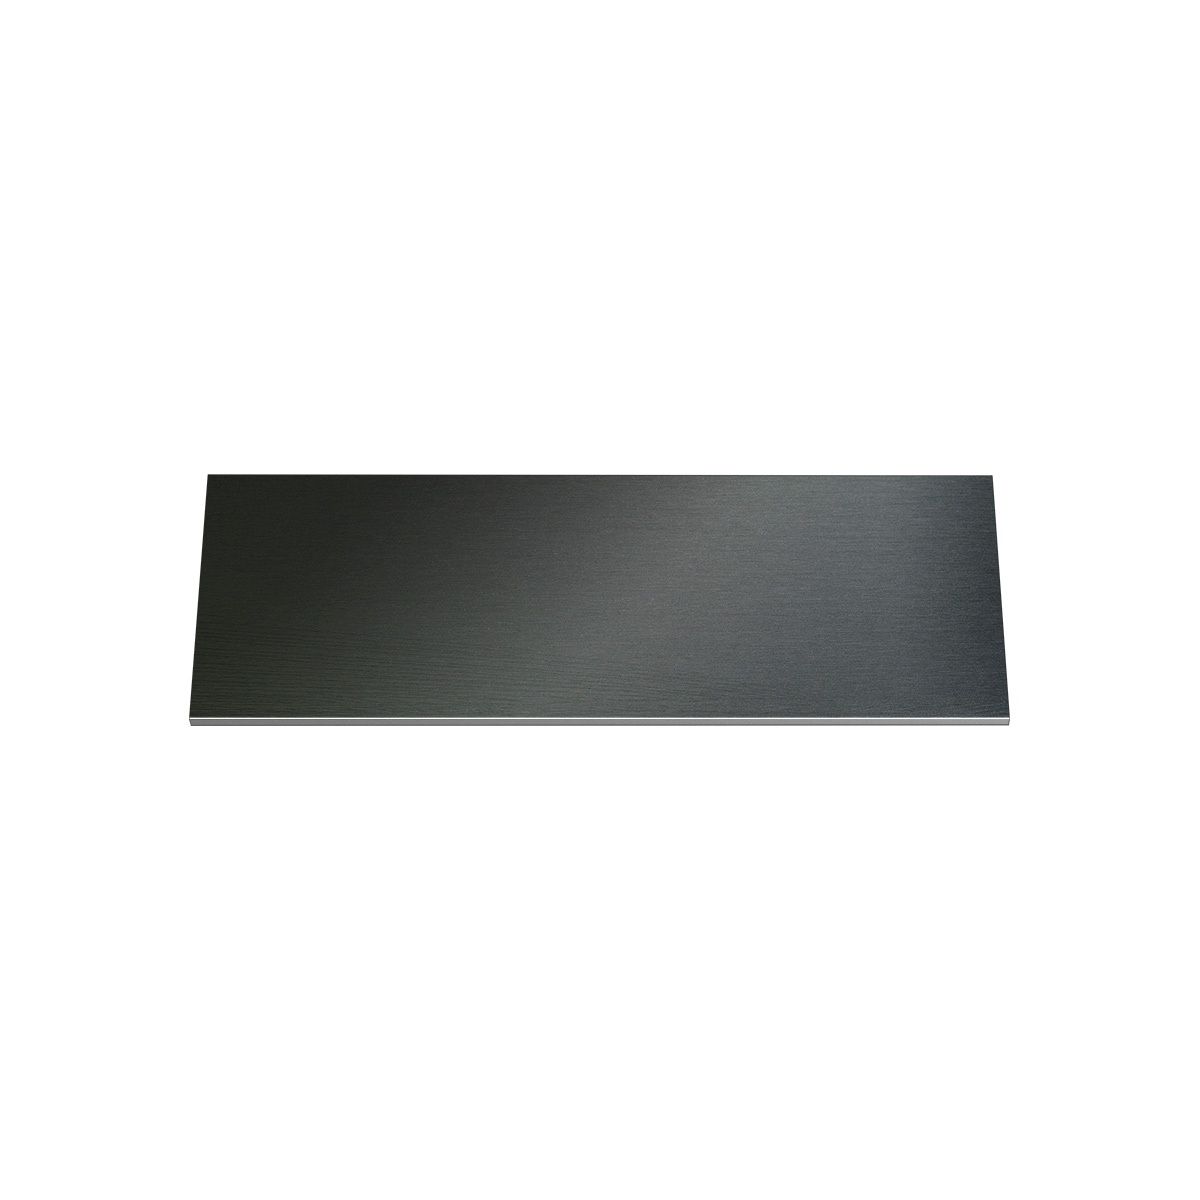 Gravurschild, Alu schwarz, rechteckig, 70 x 25 mm, 1 mm dick, mit Kleber, ohne Bohrung